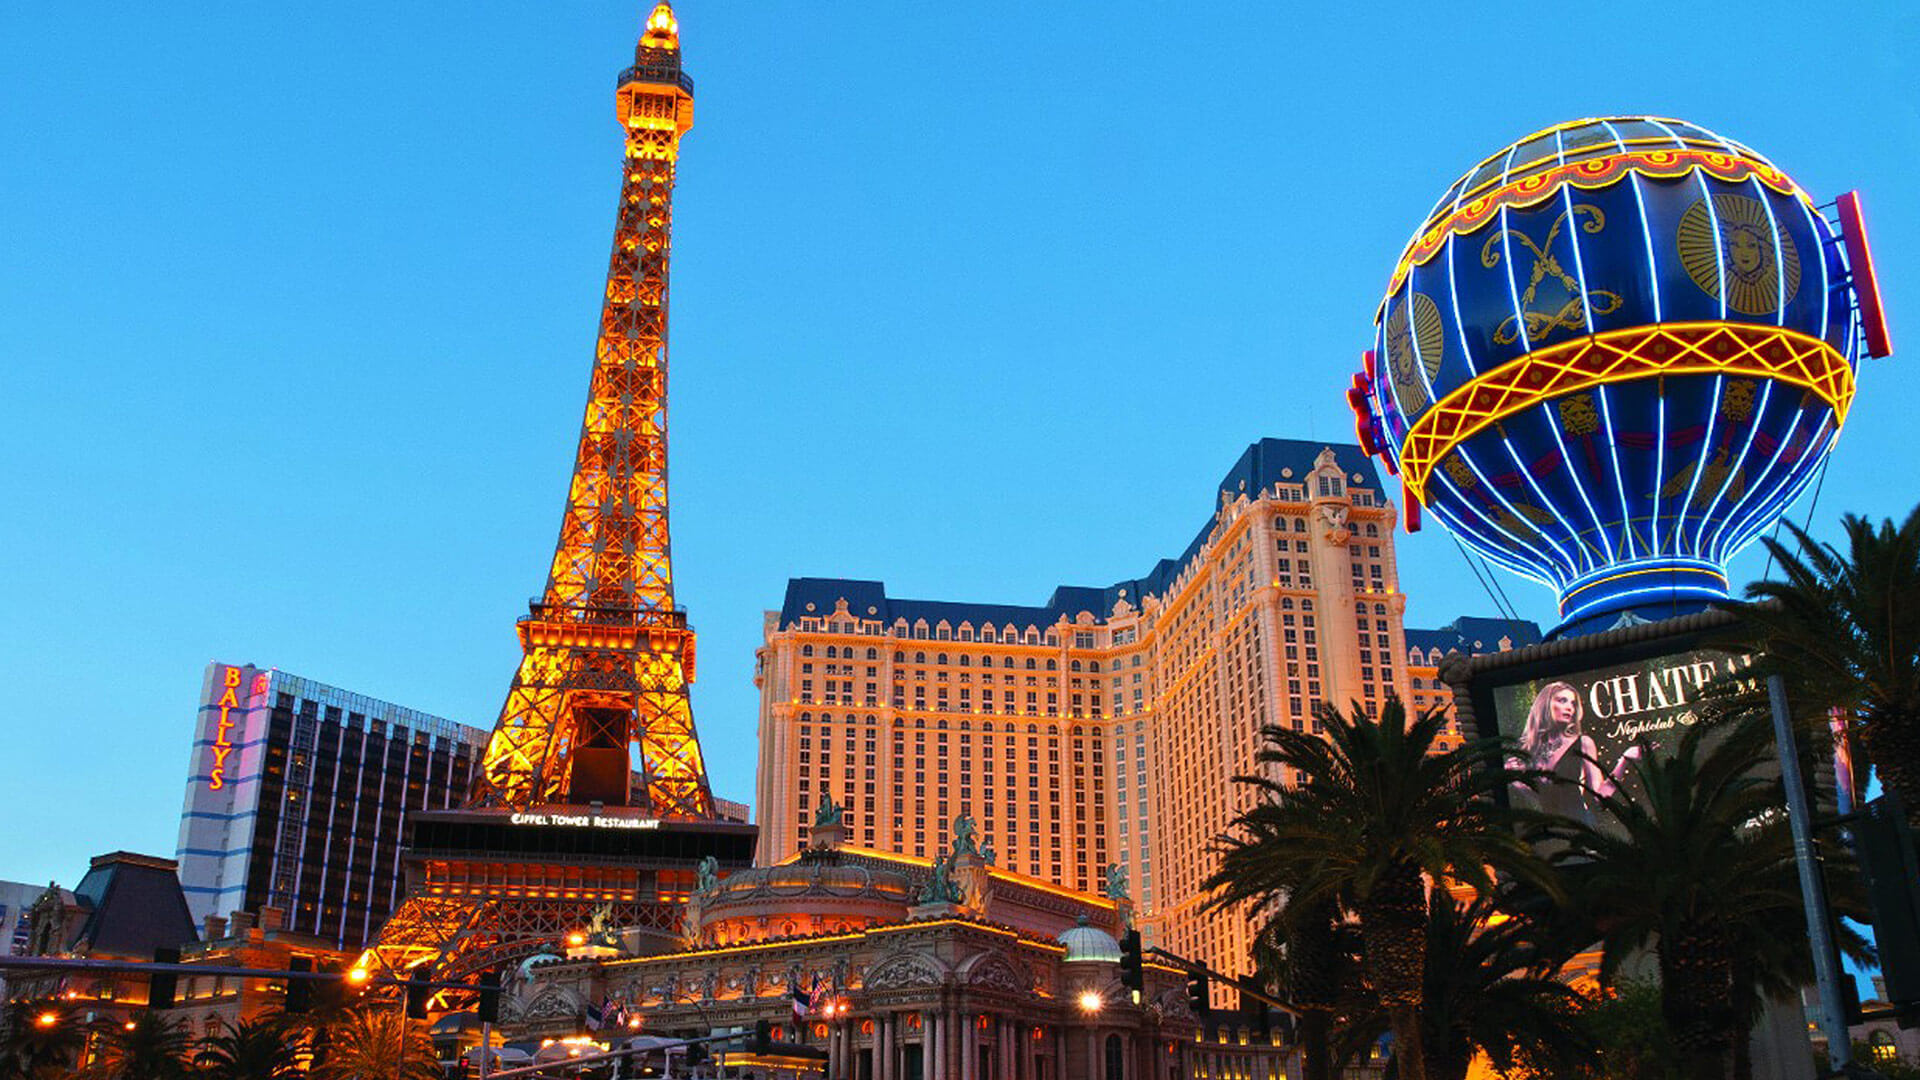 Paris Hotel Las Vegas, Search Hotels